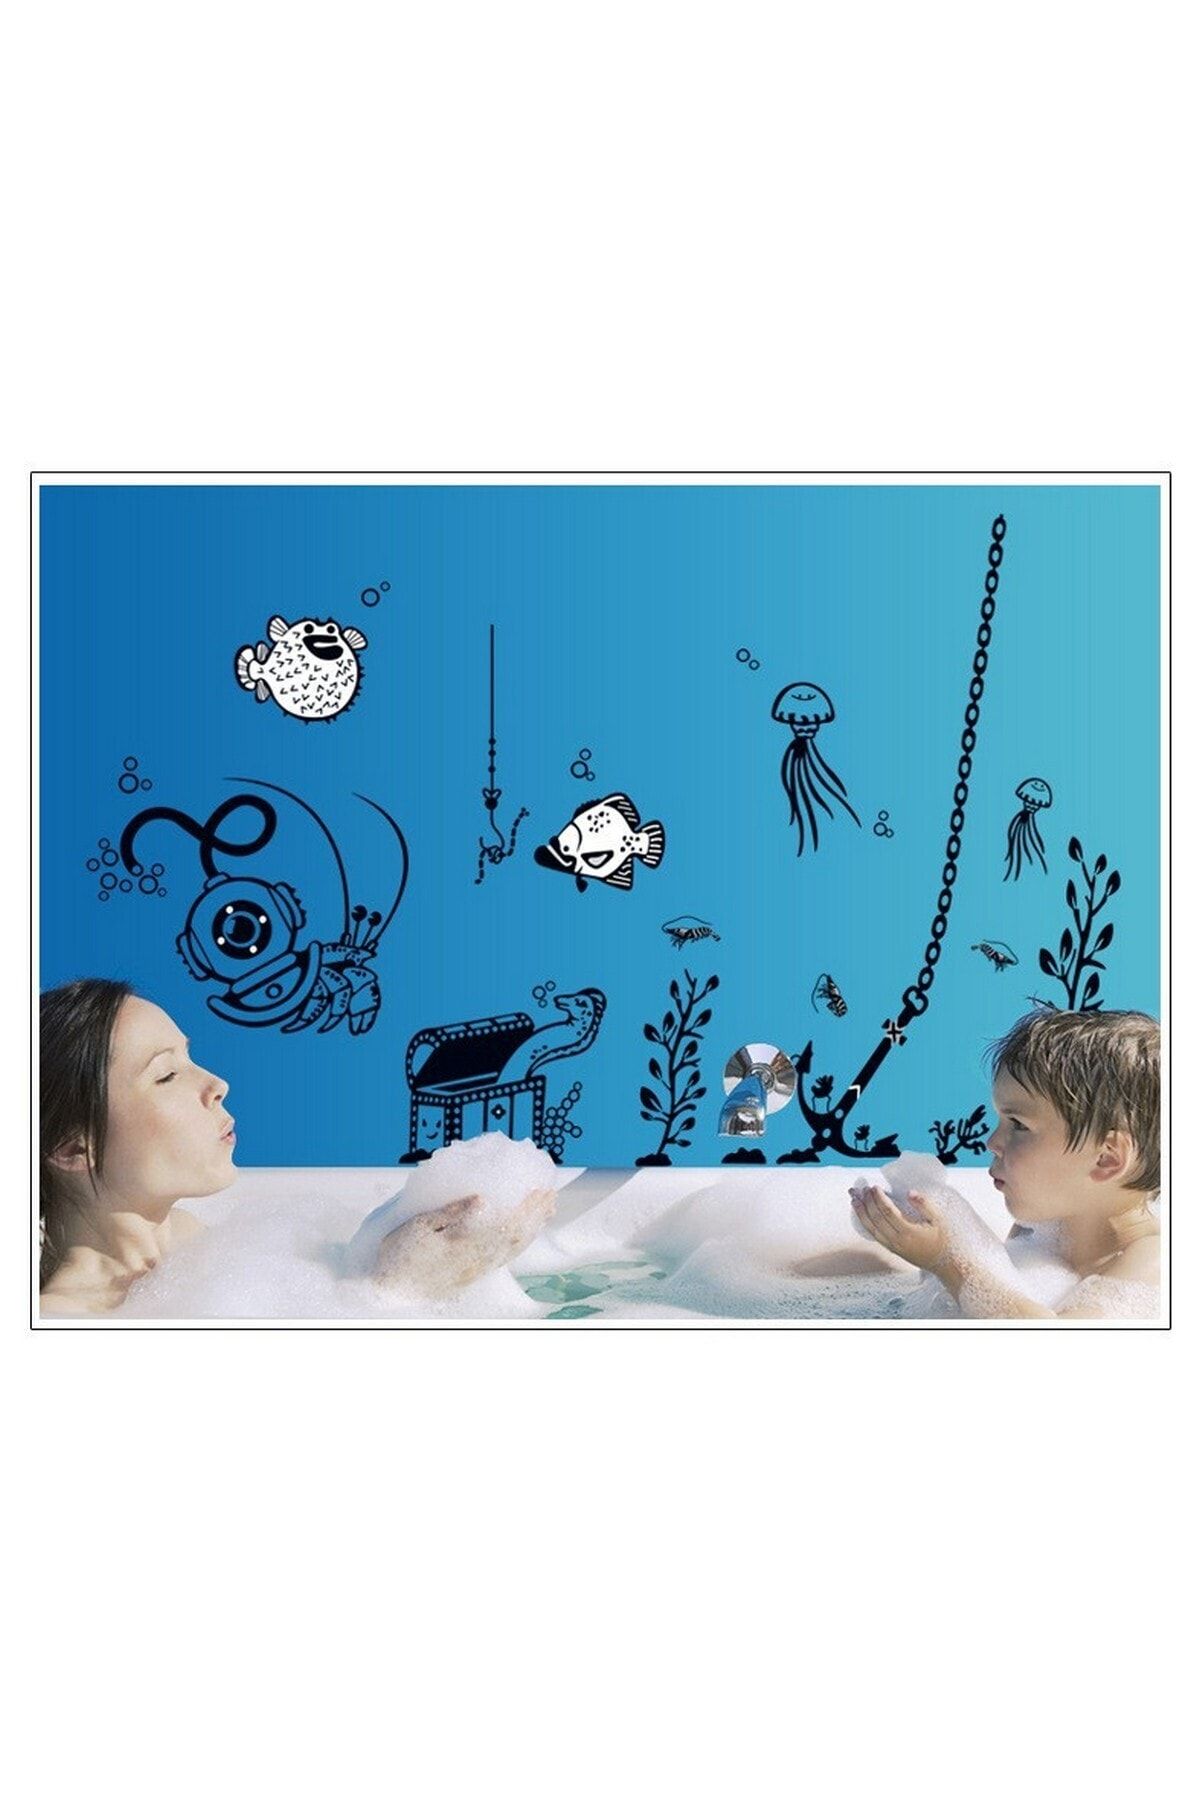 CRYSTAL KIDS Sualtı Deniz Temalı Çocuk Odası Ve Ev Dekorasyonu Pvc Duvar Sticker